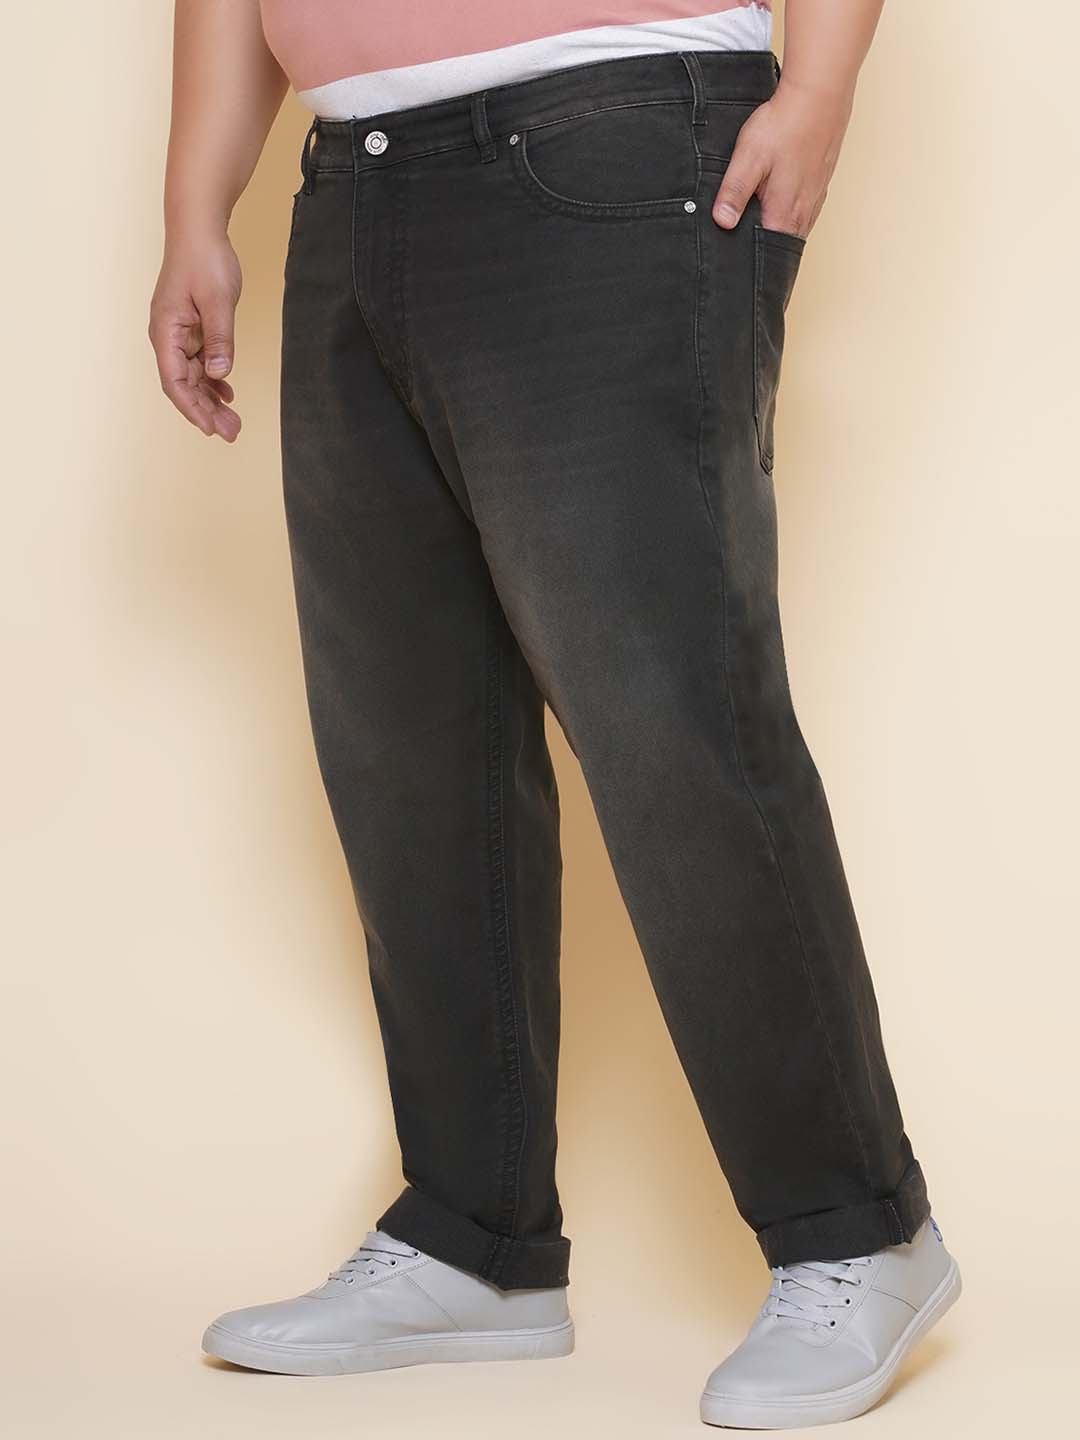 bottomwear/jeans/JPJ12429/jpj12429-4.jpg